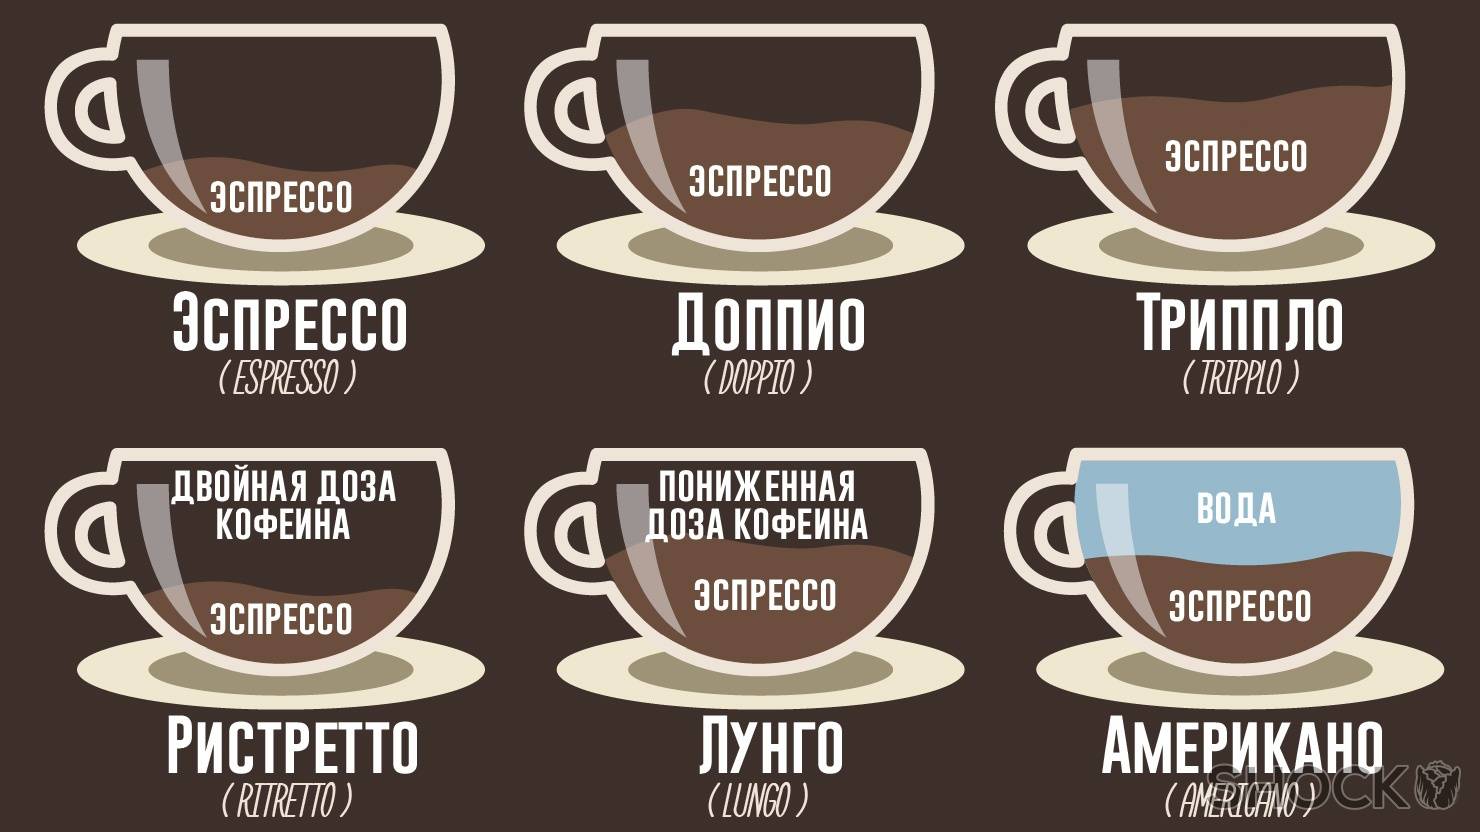 Black latte (кофе) для похудения: реальные отзывы, где купить, цена
black latte (кофе) для похудения: реальные отзывы, где купить, цена